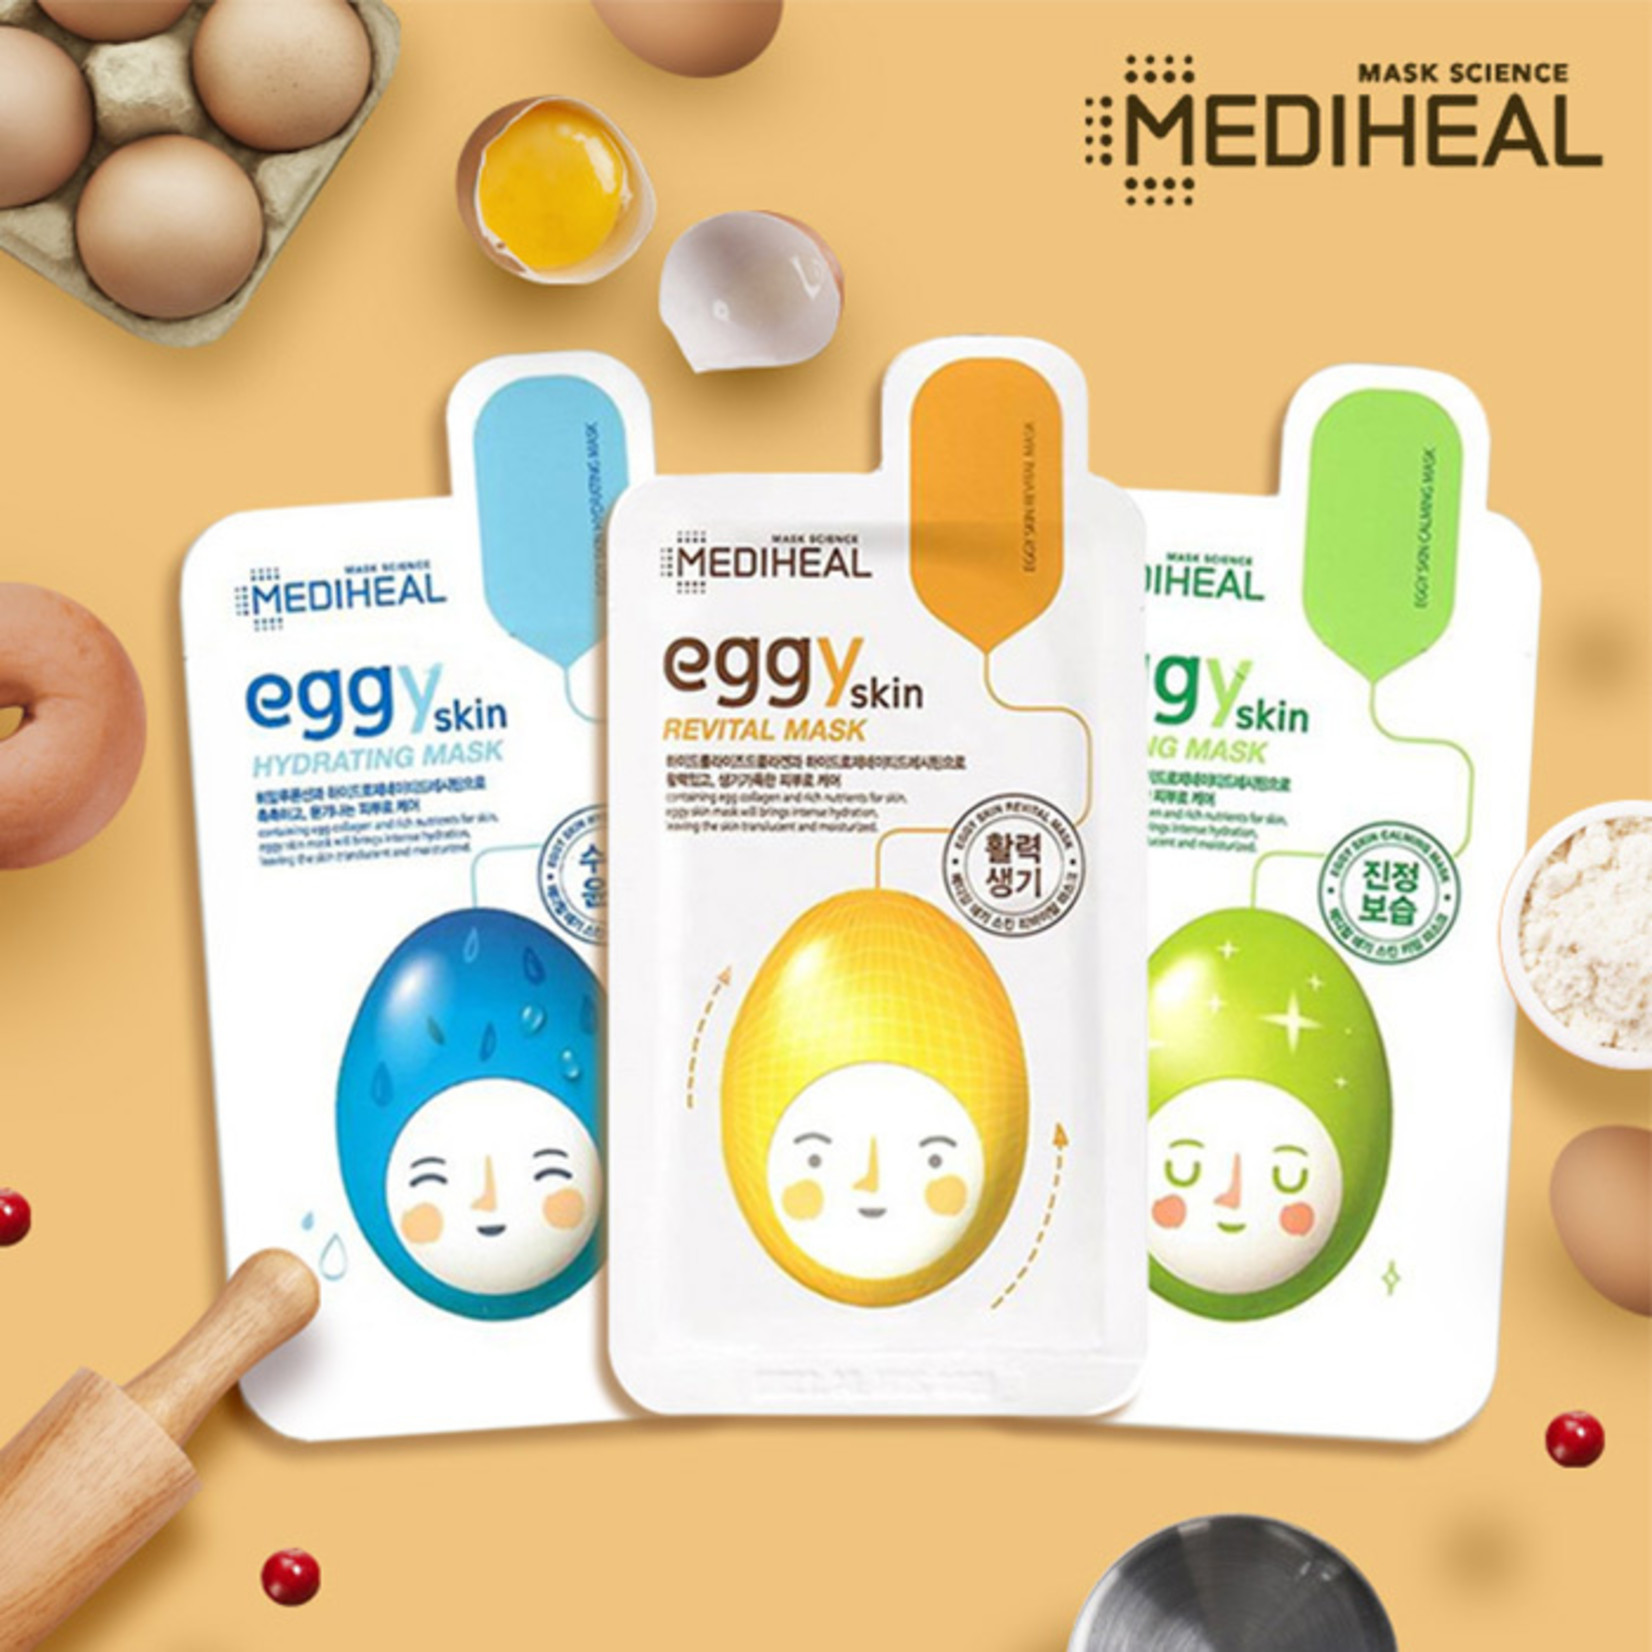 Mediheal eggYskin Revital Mask (New packaging)